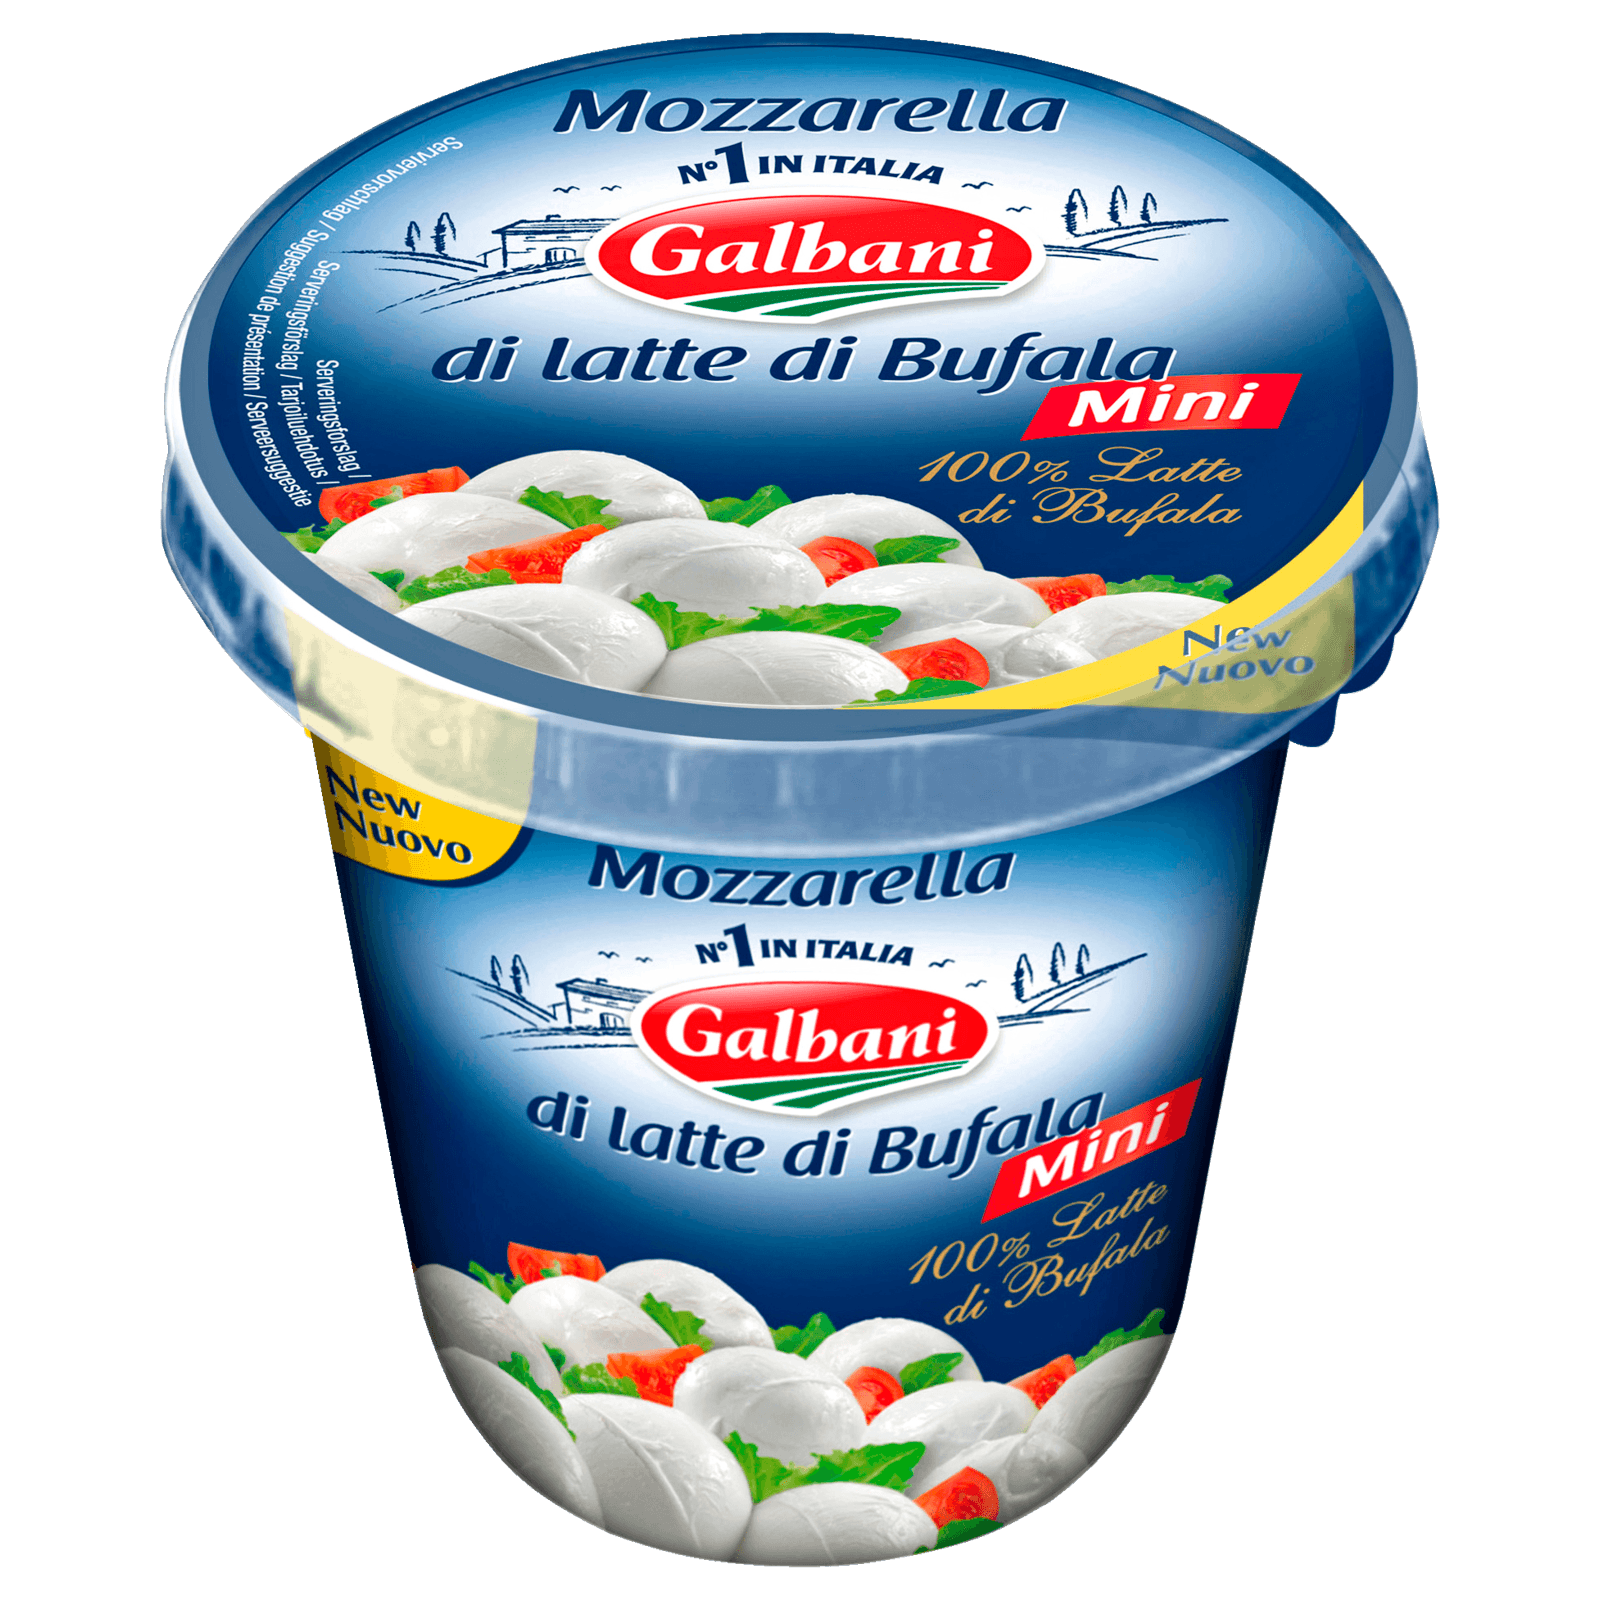 Galbani Mozzarella di latte di Bufala 350g  für 3.49 EUR